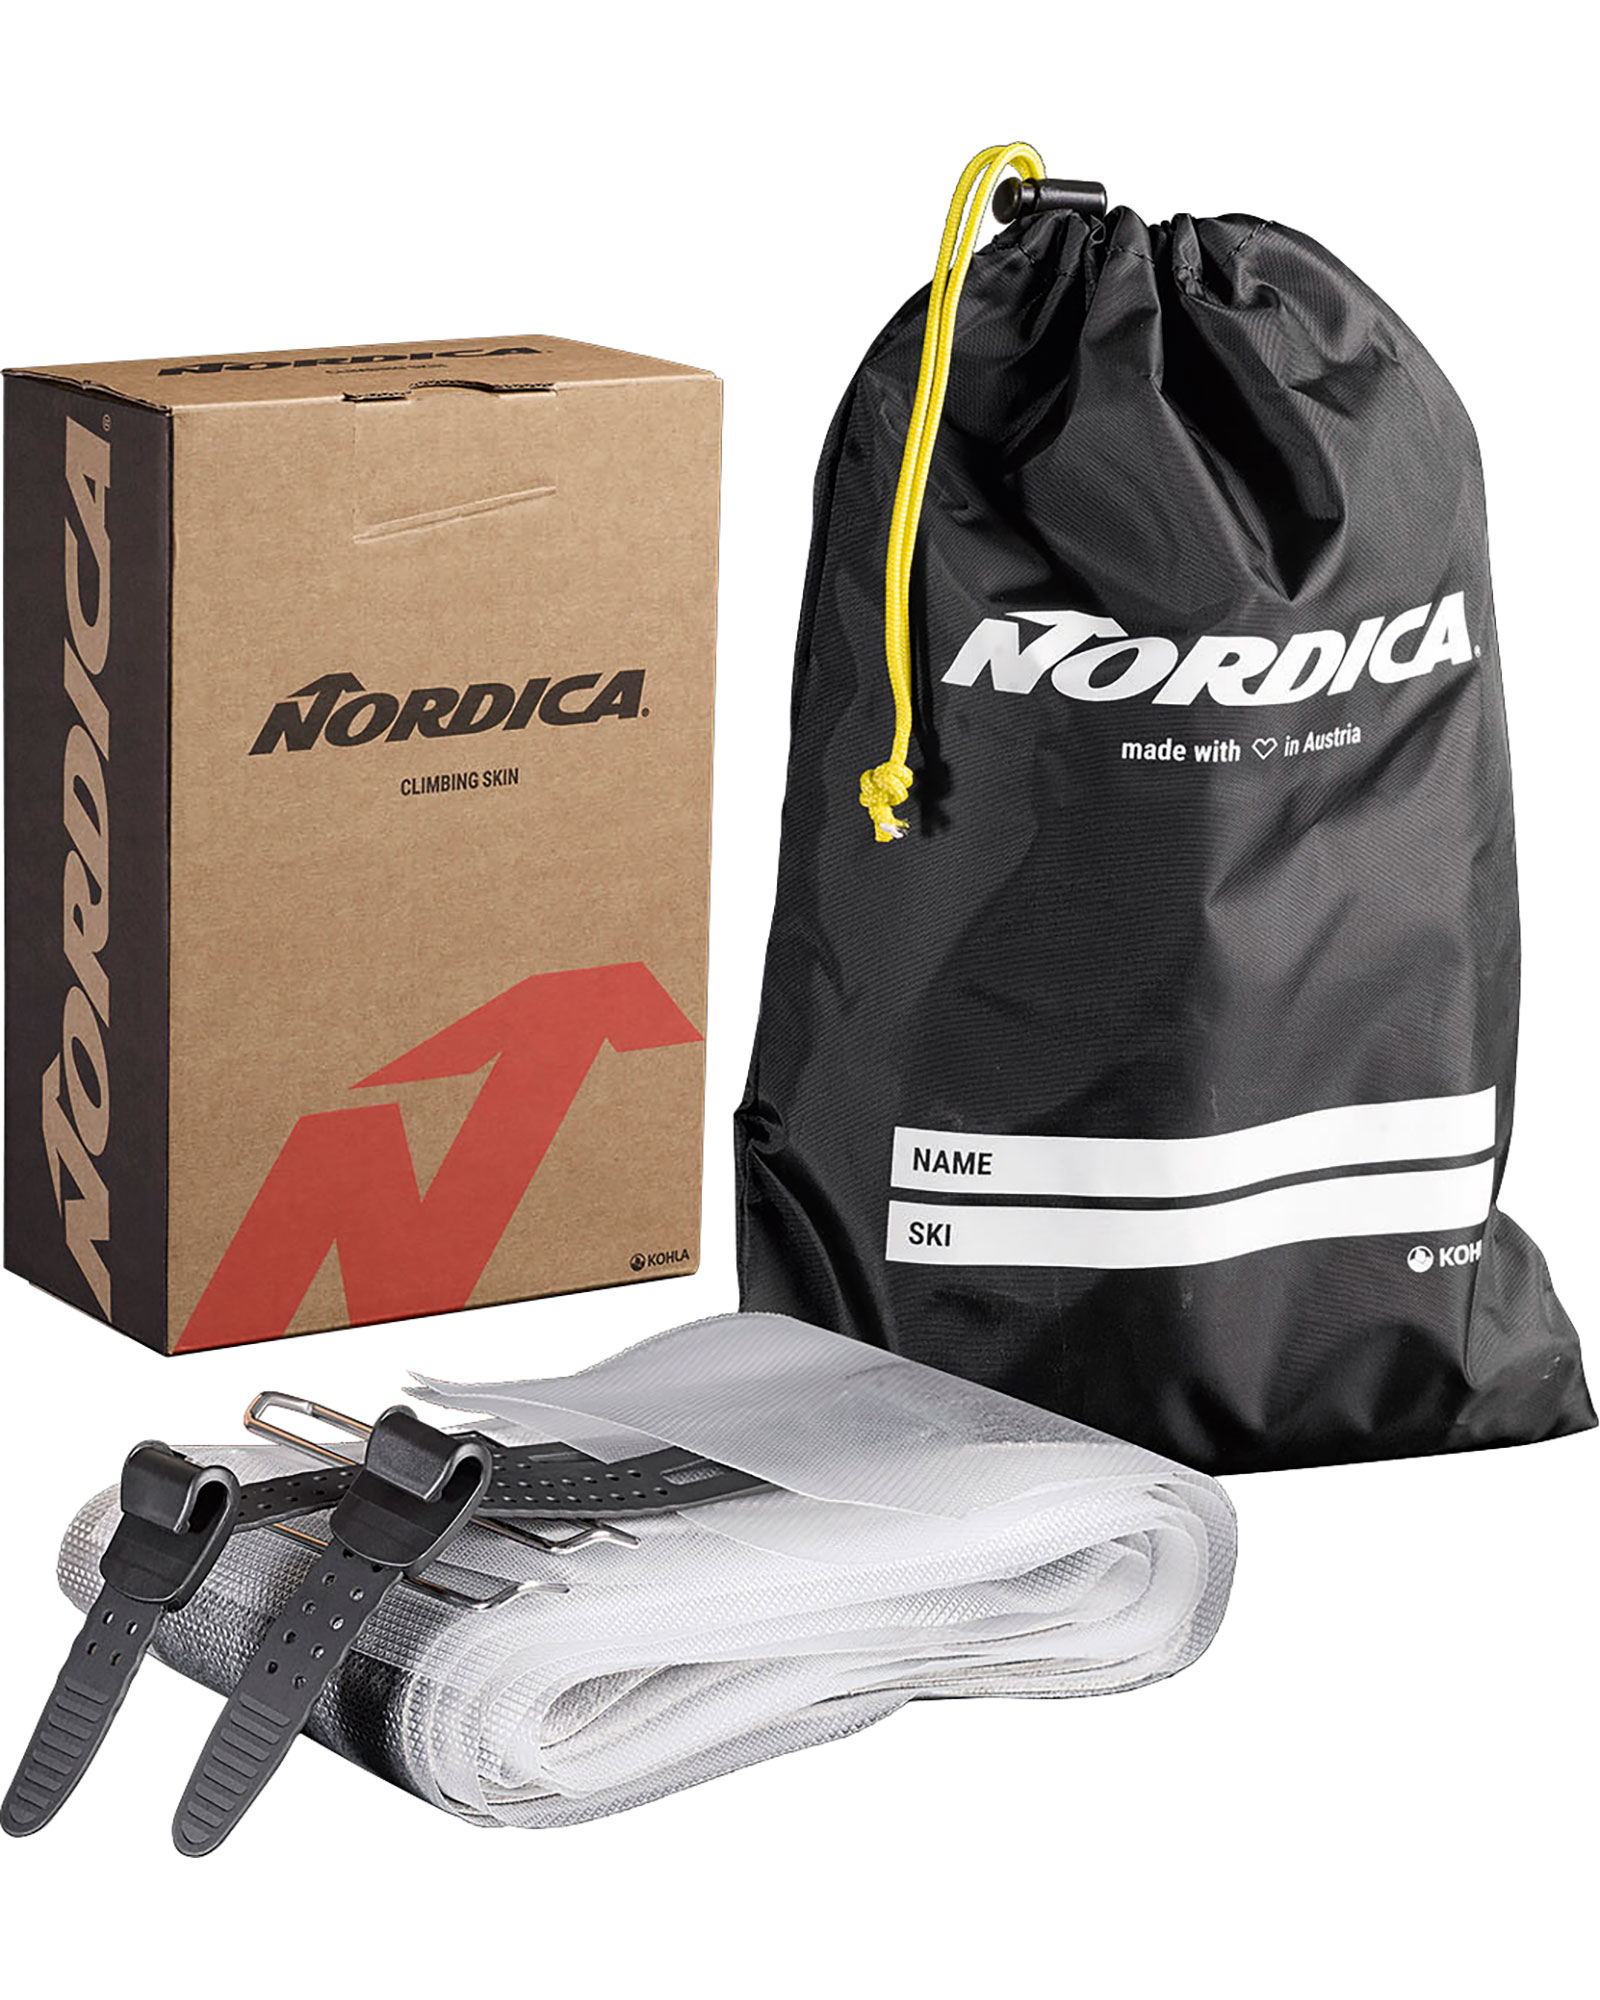 Nordica Enforcer / Santa Ana 88 Skins 179cm